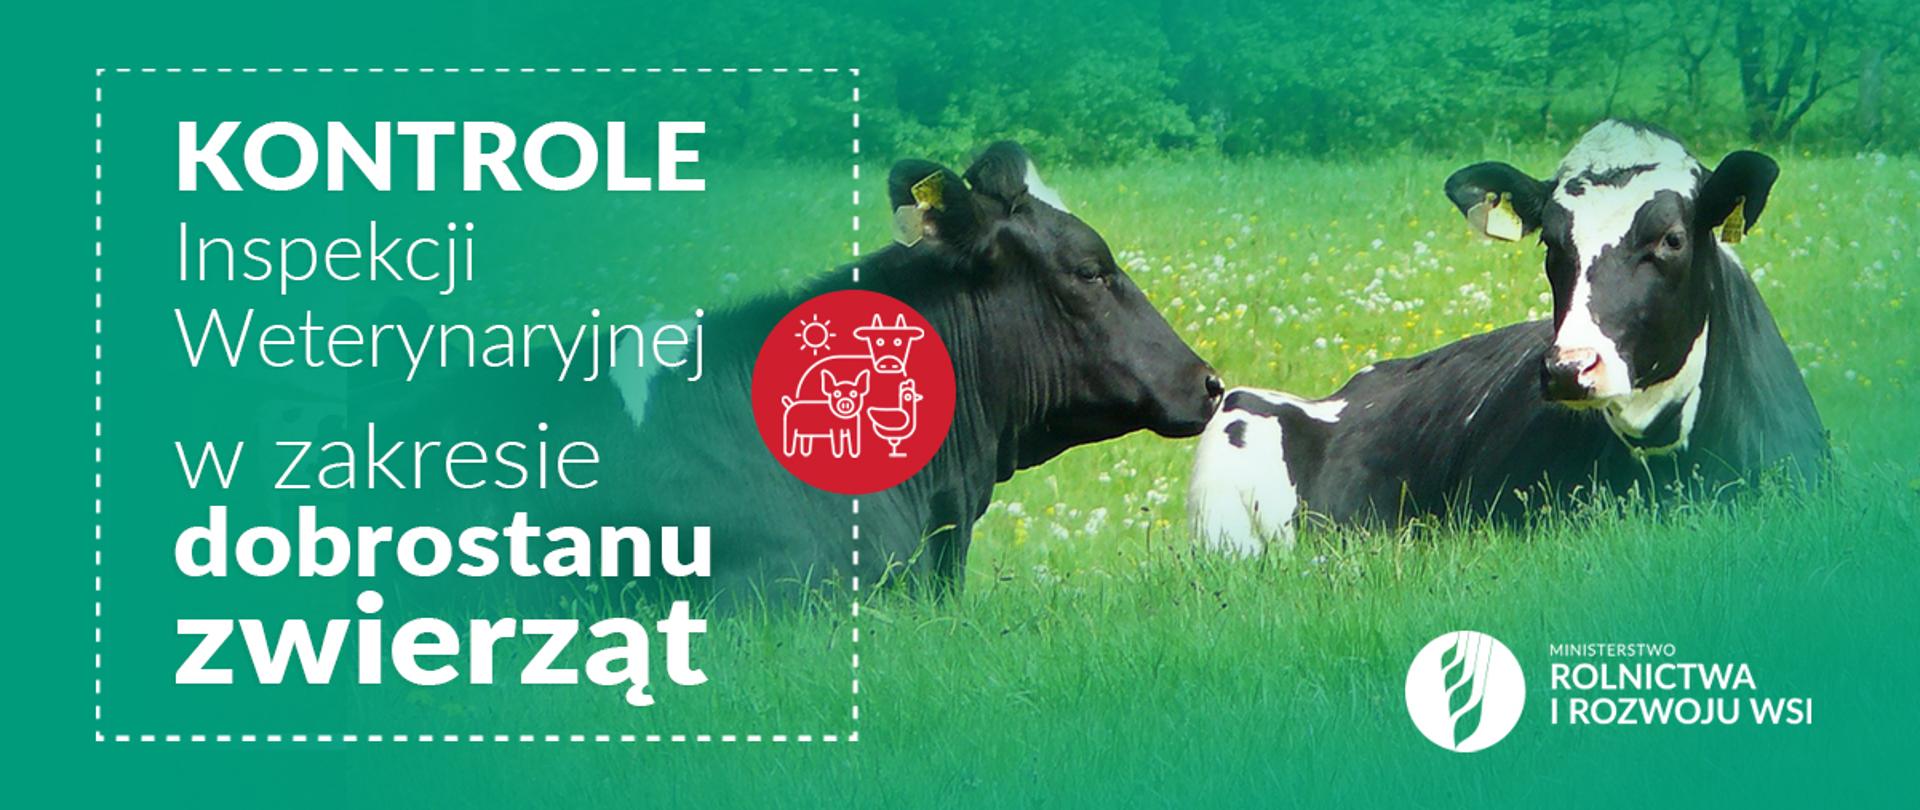 Infografika do komunikatu "Kontrole Inspekcji Weterynaryjnej w zakresie dobrostanu zwierząt".
Dwie krowy leżące na łące.